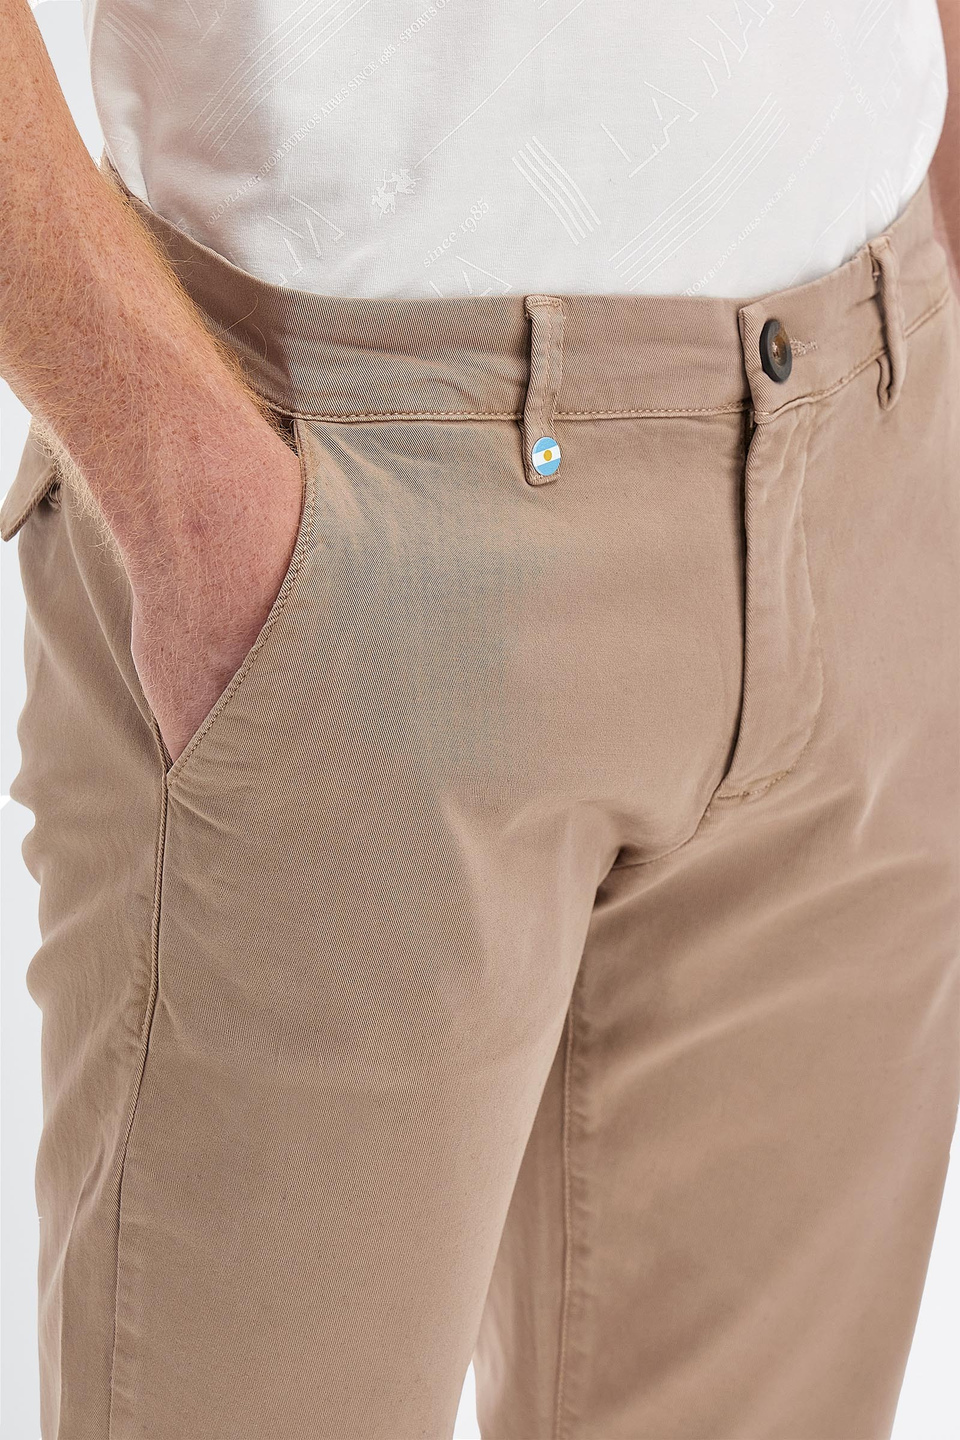 Pantalón de algodón elástico chino slim fit para hombre | La Martina - Official Online Shop